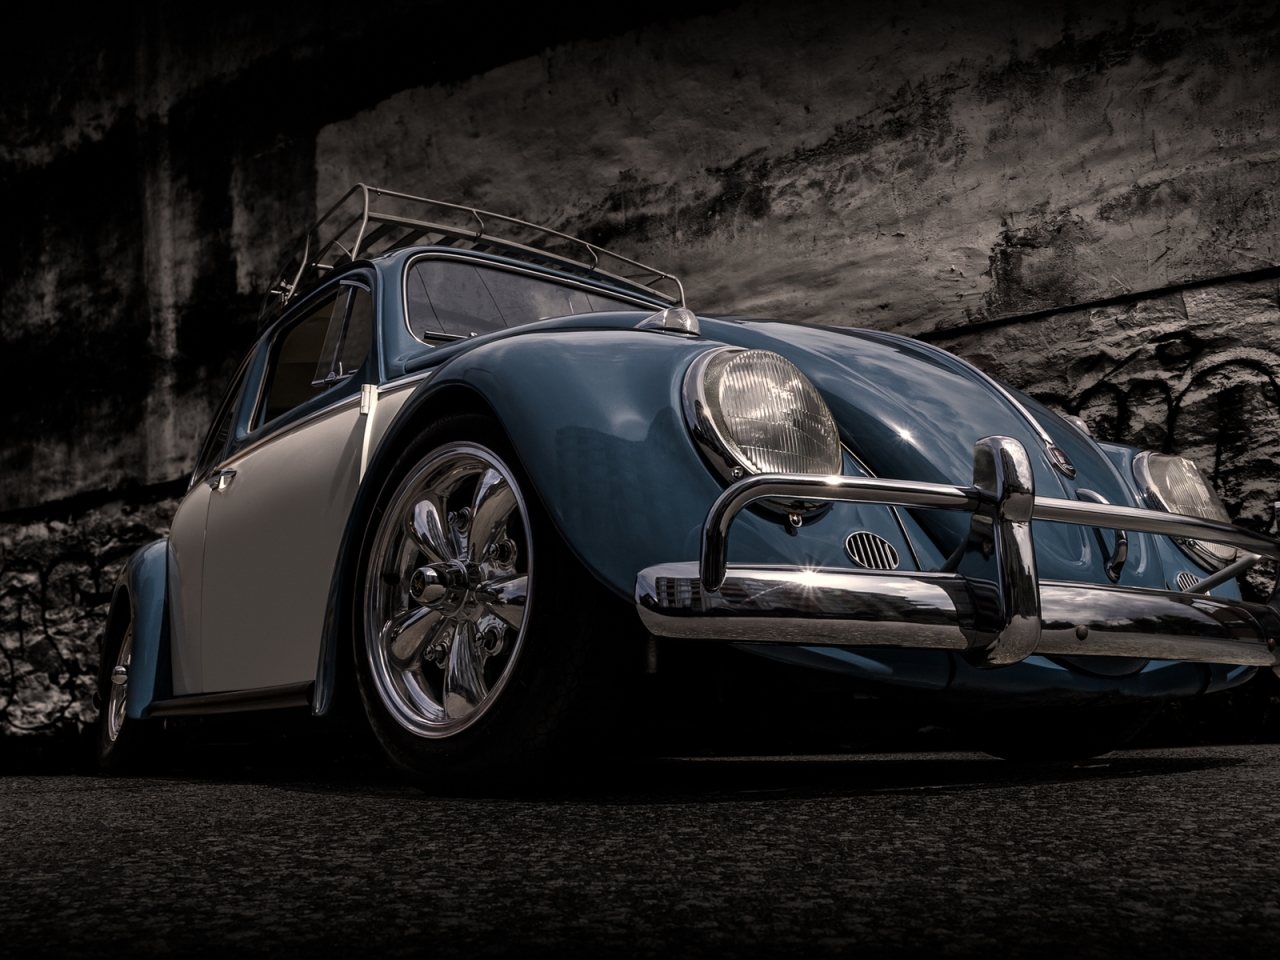 Volkswagen Beetle Retro for 1280 x 960 resolution